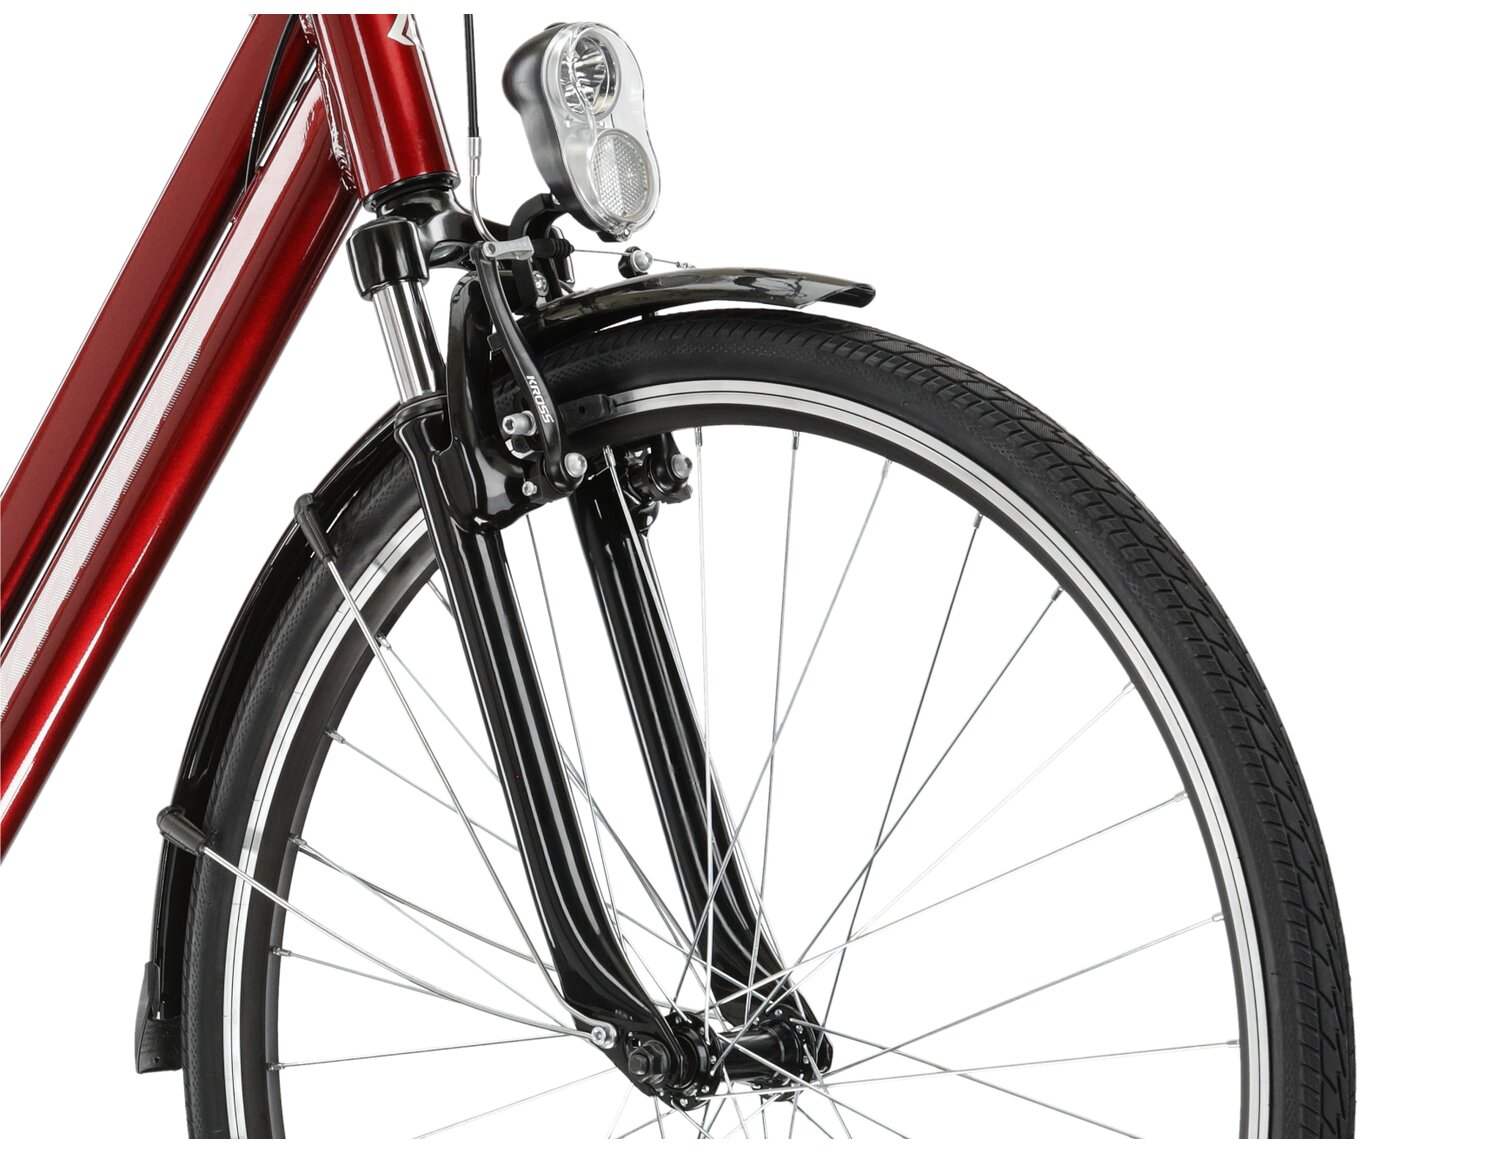 Aluminowa rama, amortyzowany widelec o skoku 30mm oraz opony o szerokości 1,5 cala w rowerze miejskim KROSS Sentio 1.0 